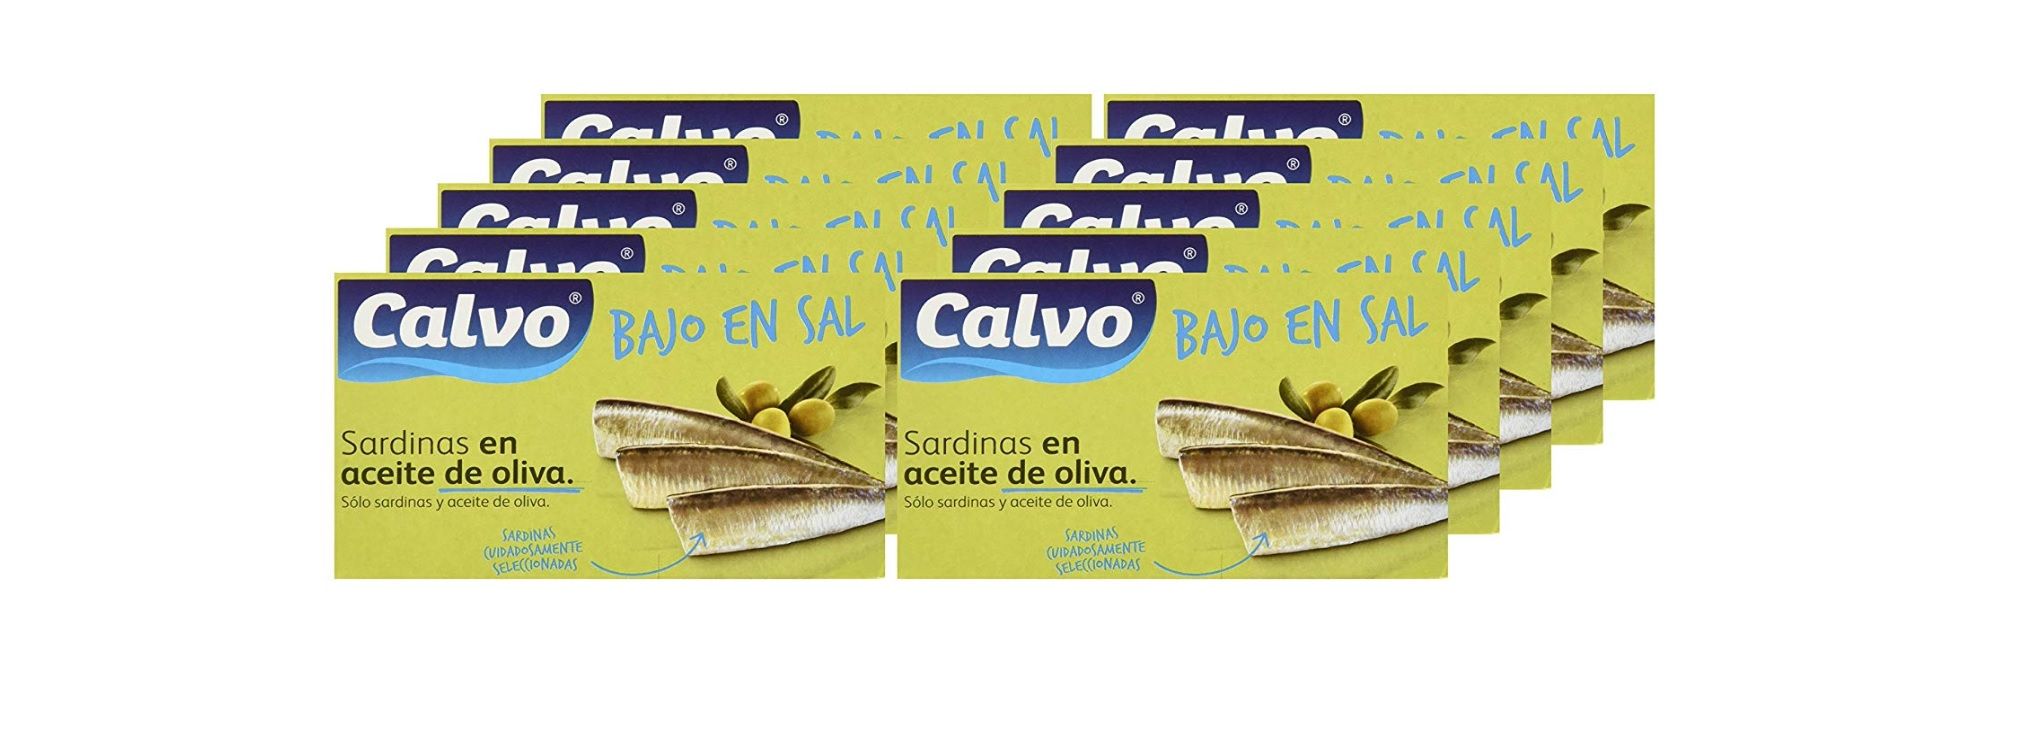 ¡Dto al tramitar! Pack de 10 latas de Sardinas en Aceite de Oliva Calvo